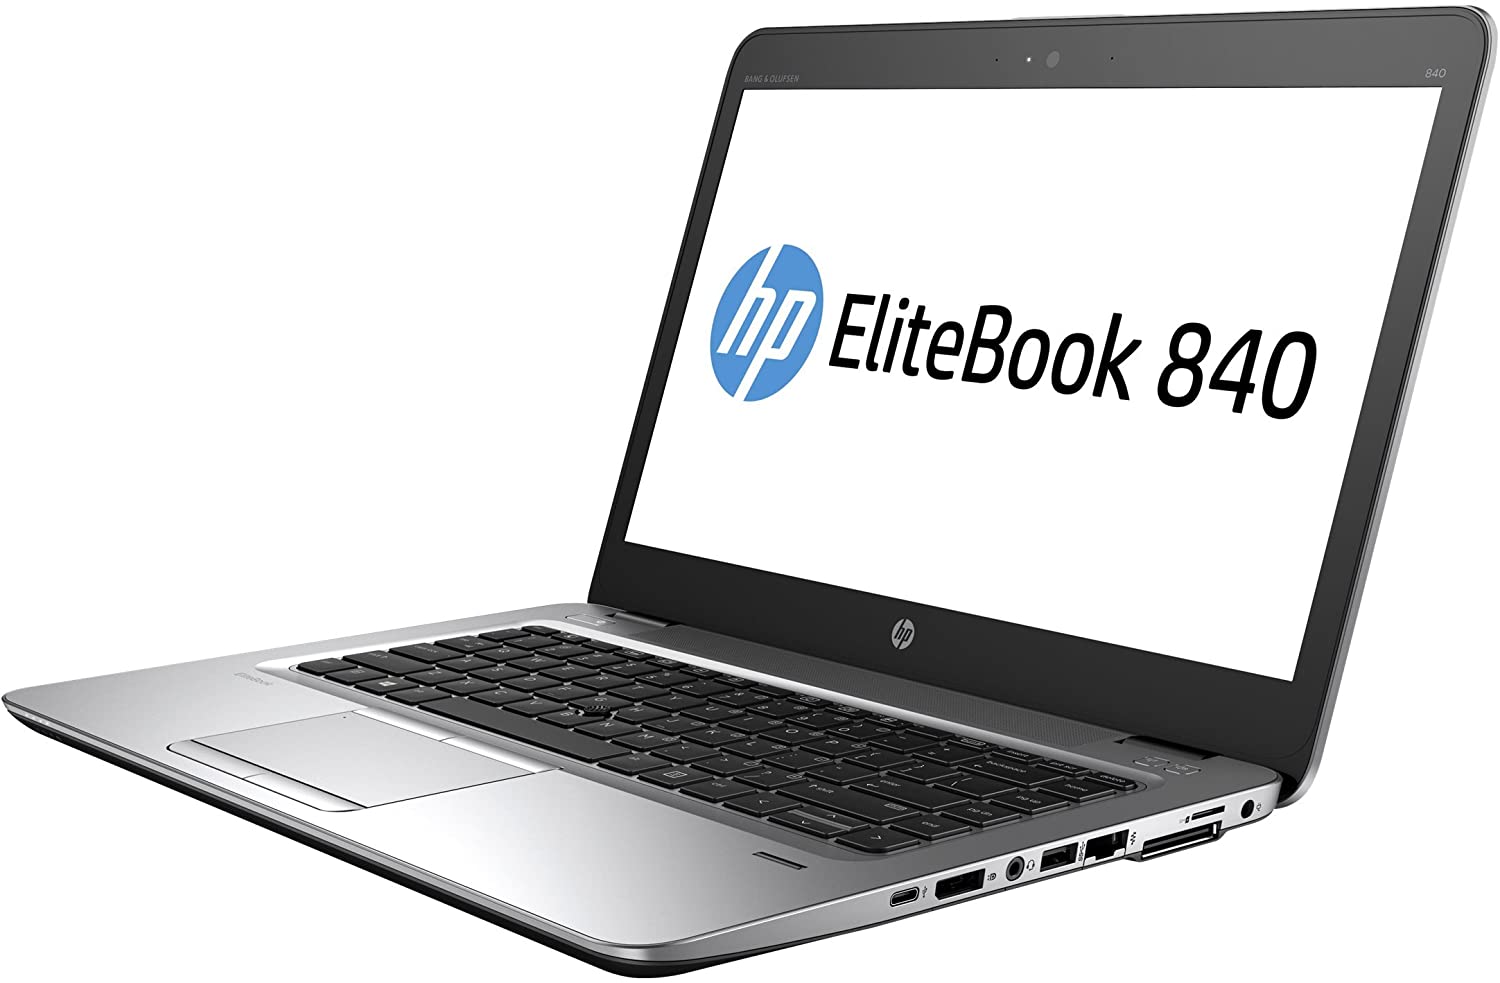 Portátil Ultrabook HP Elitebook 840 G3 GRADO A con teclado castellano (Intel Core i7 6600U 2.6Ghz/8GB/256SSD-M.2/14FHD/NO-DVD/W10P) Preinstalado